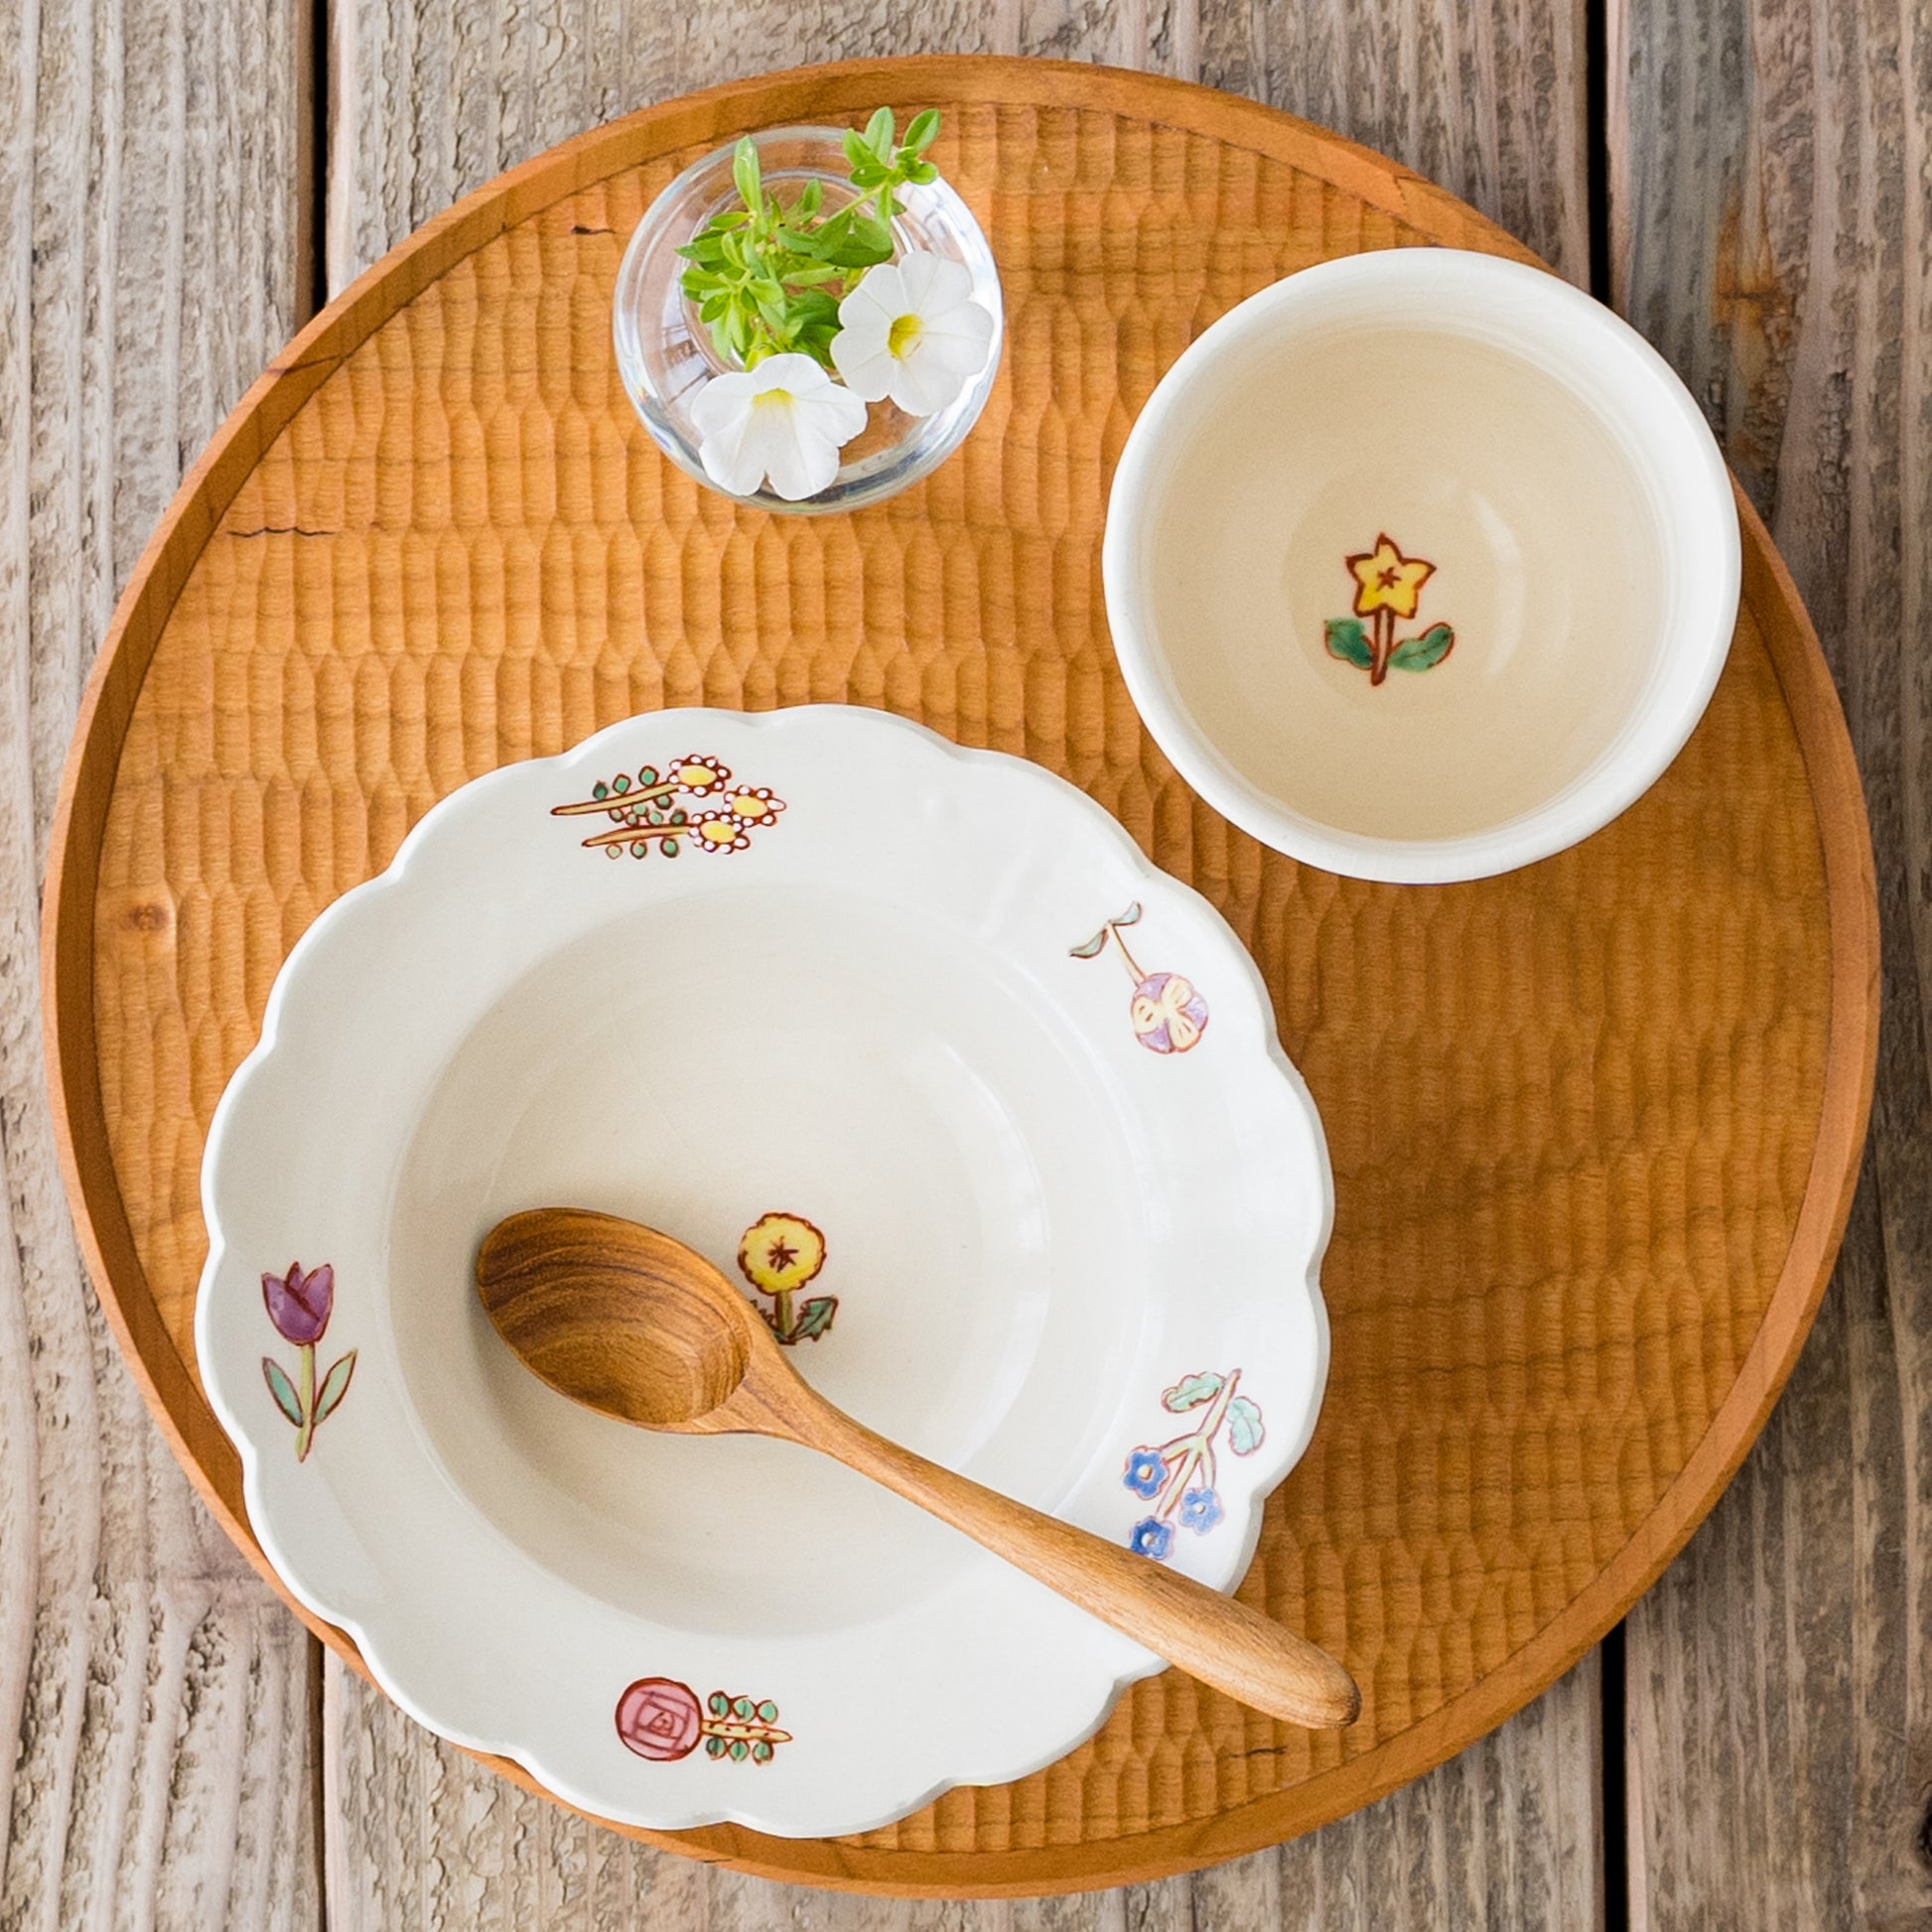 おうちごはんがもっと楽しくなる長浜由起子さんの小花絵付スープ皿とフリーカップ